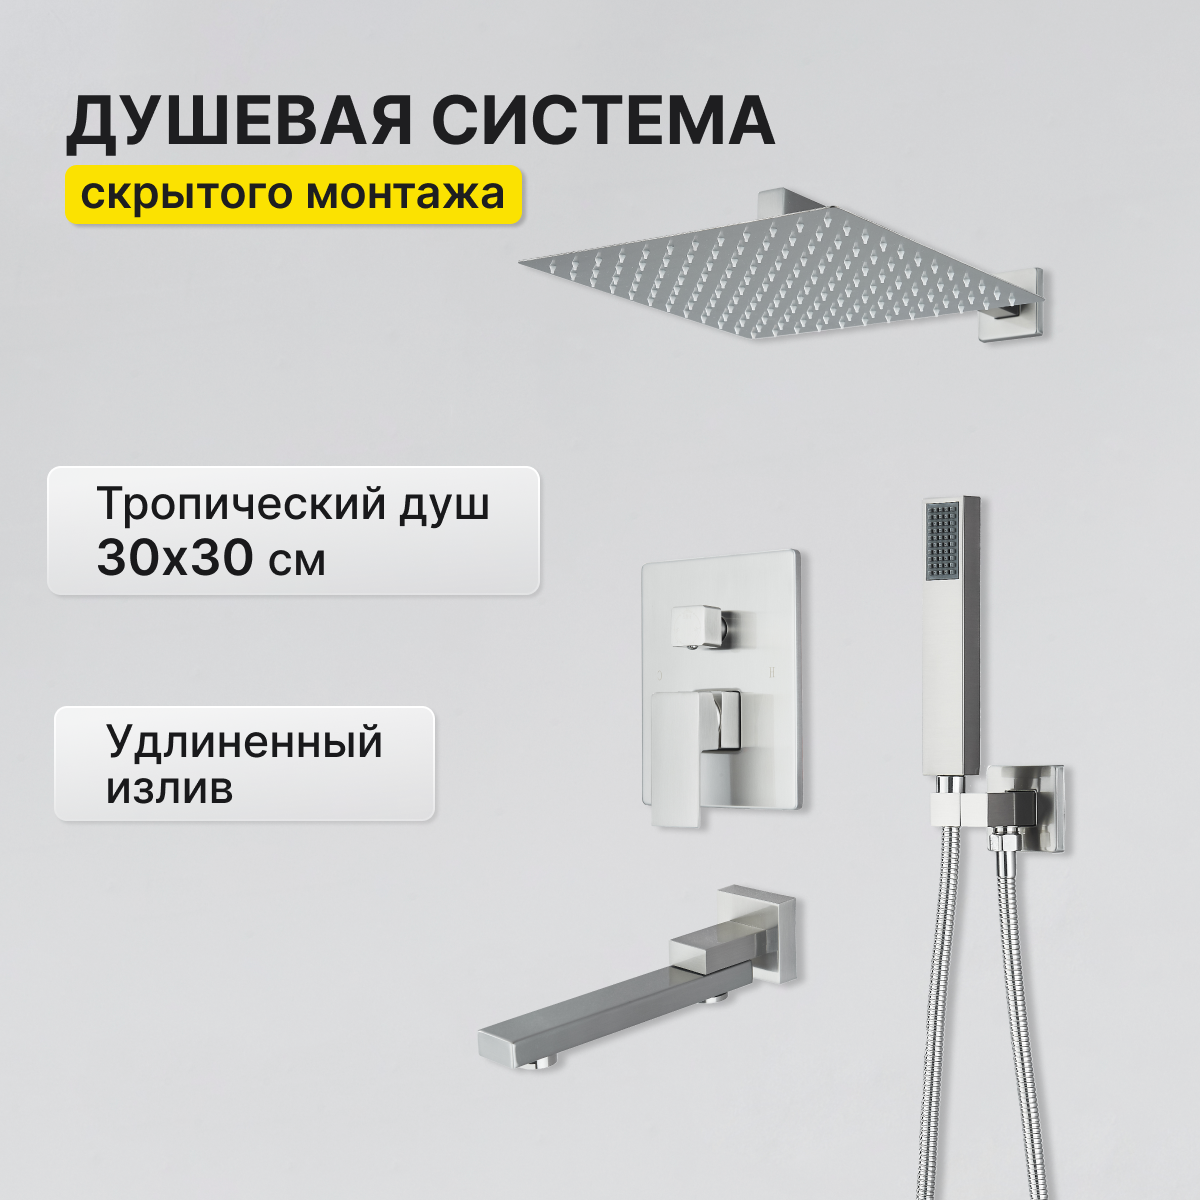 Встраиваемая душевая система с тропическим душем AB115NC никель душевая система ростовская мануфактура сантехники